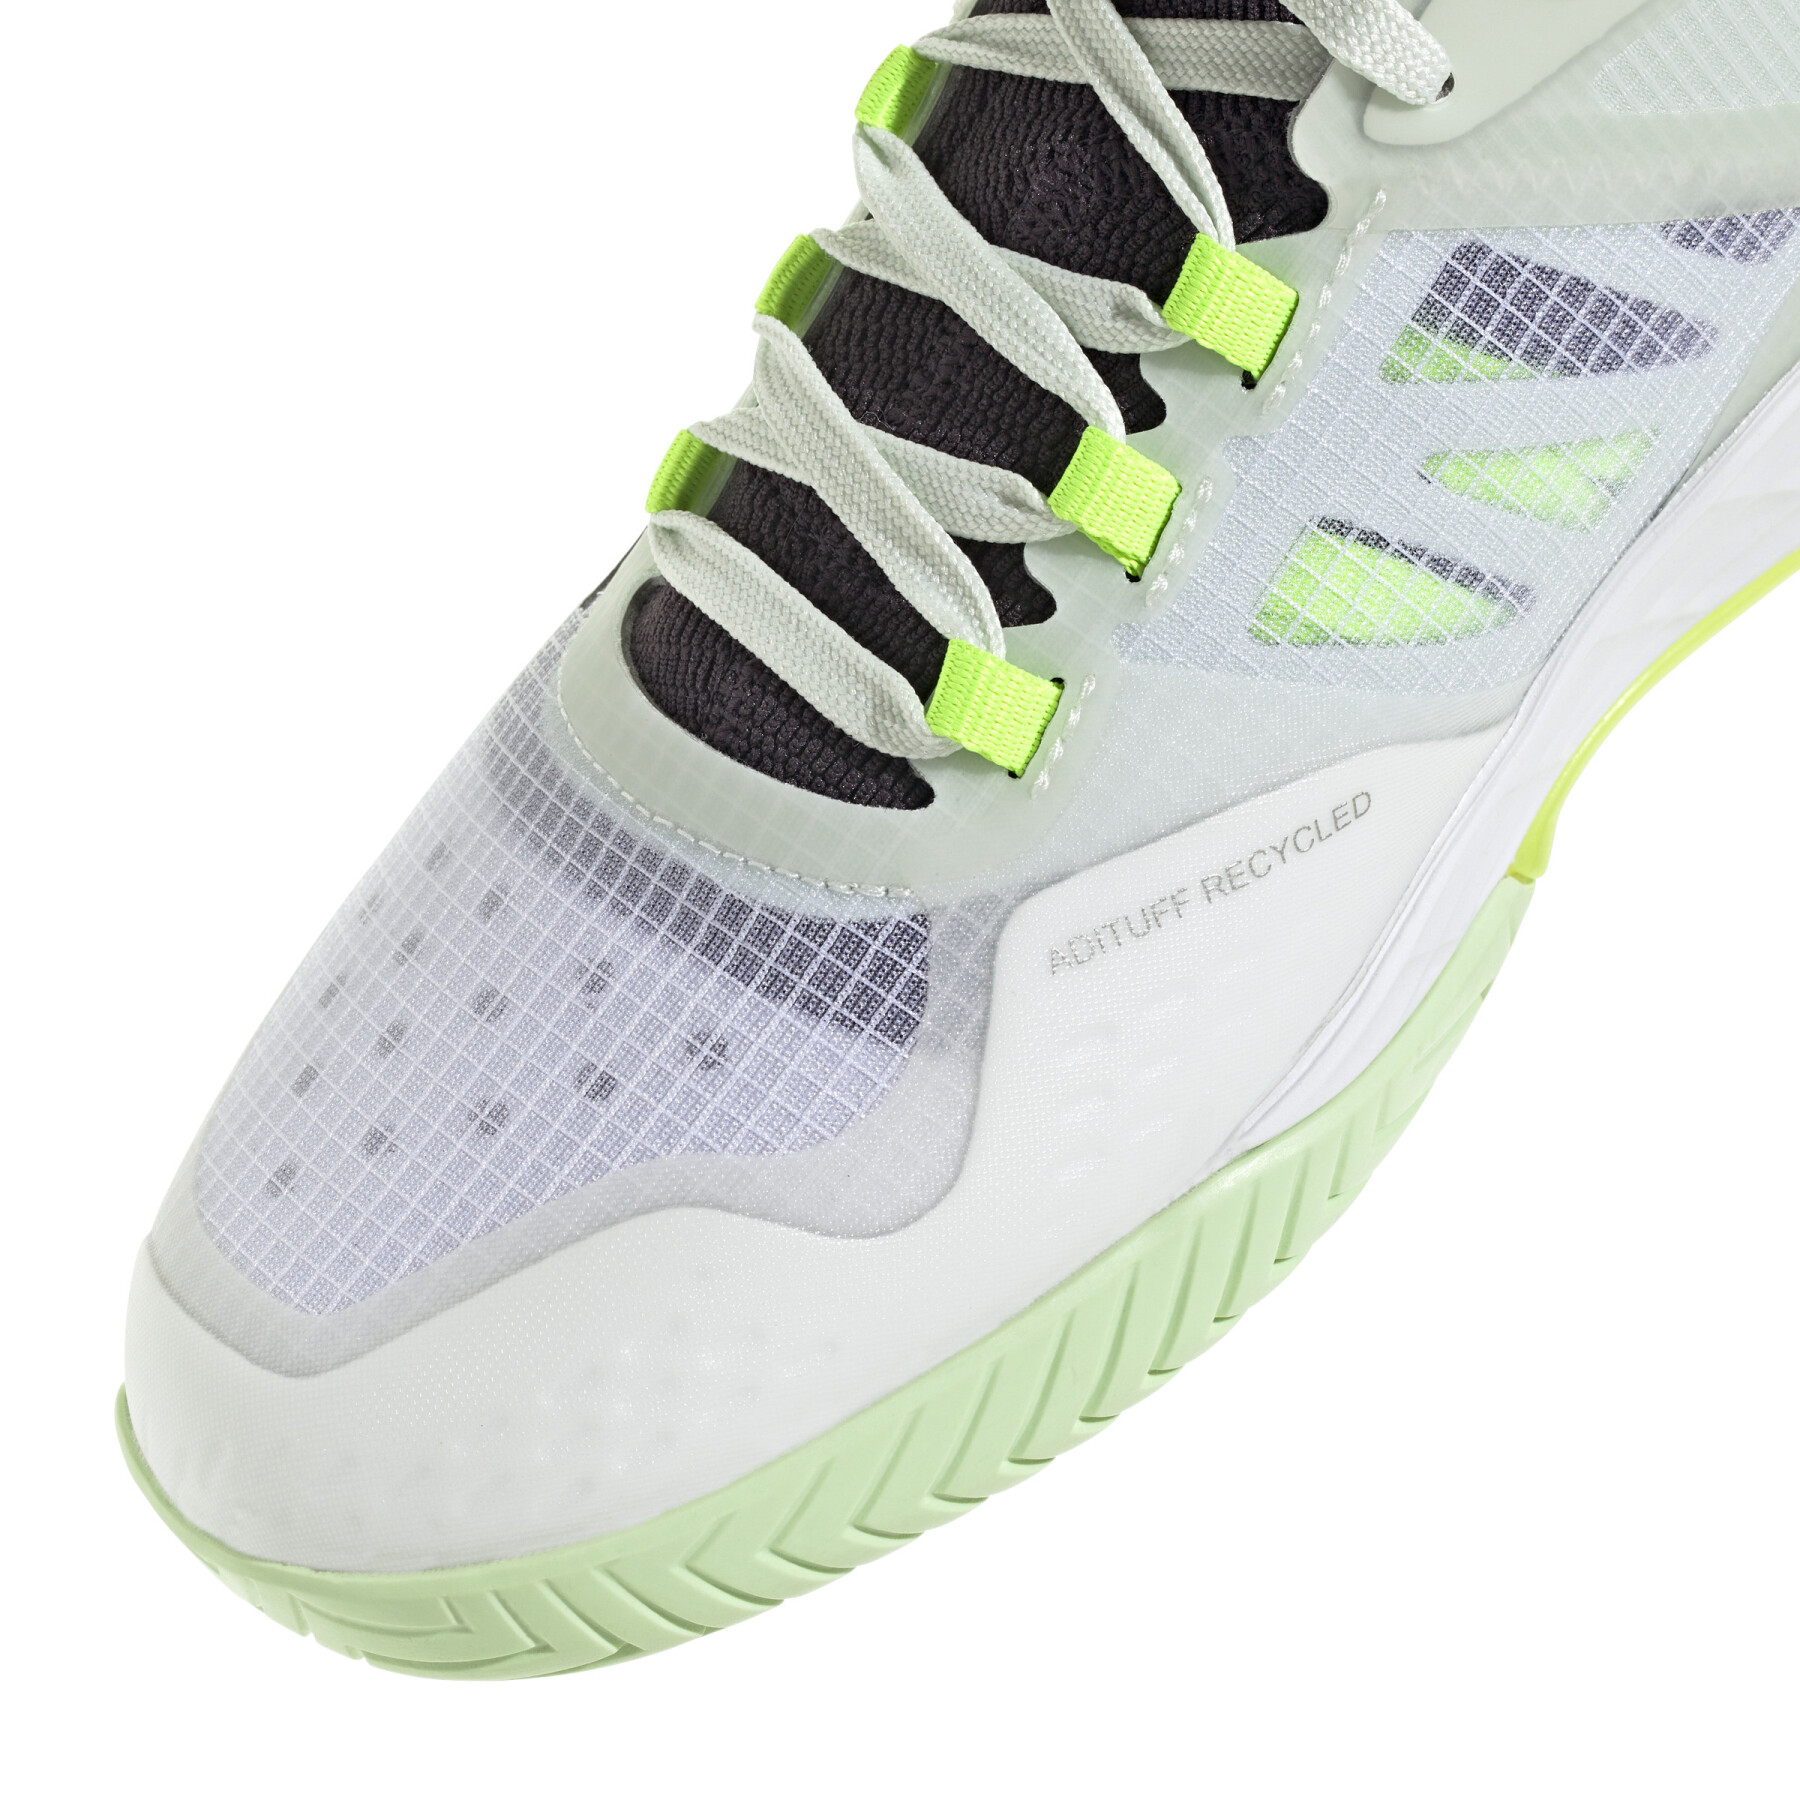 Tennis shoes adidas Adizero Ubersonic 4.1